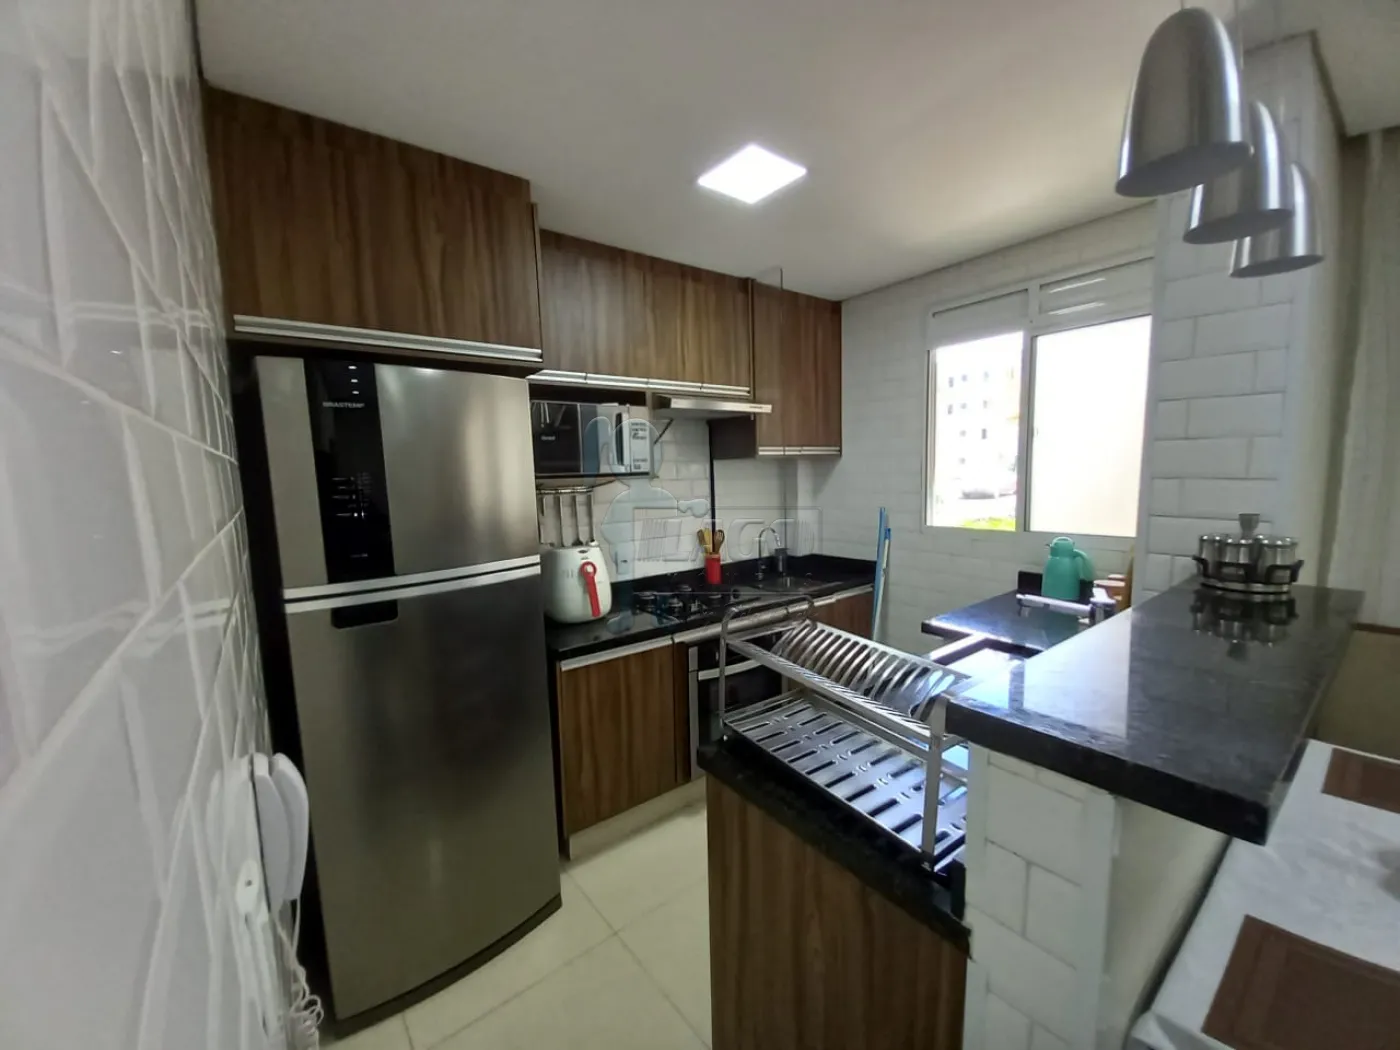 Comprar Apartamento / Padrão em Ribeirão Preto R$ 180.000,00 - Foto 6